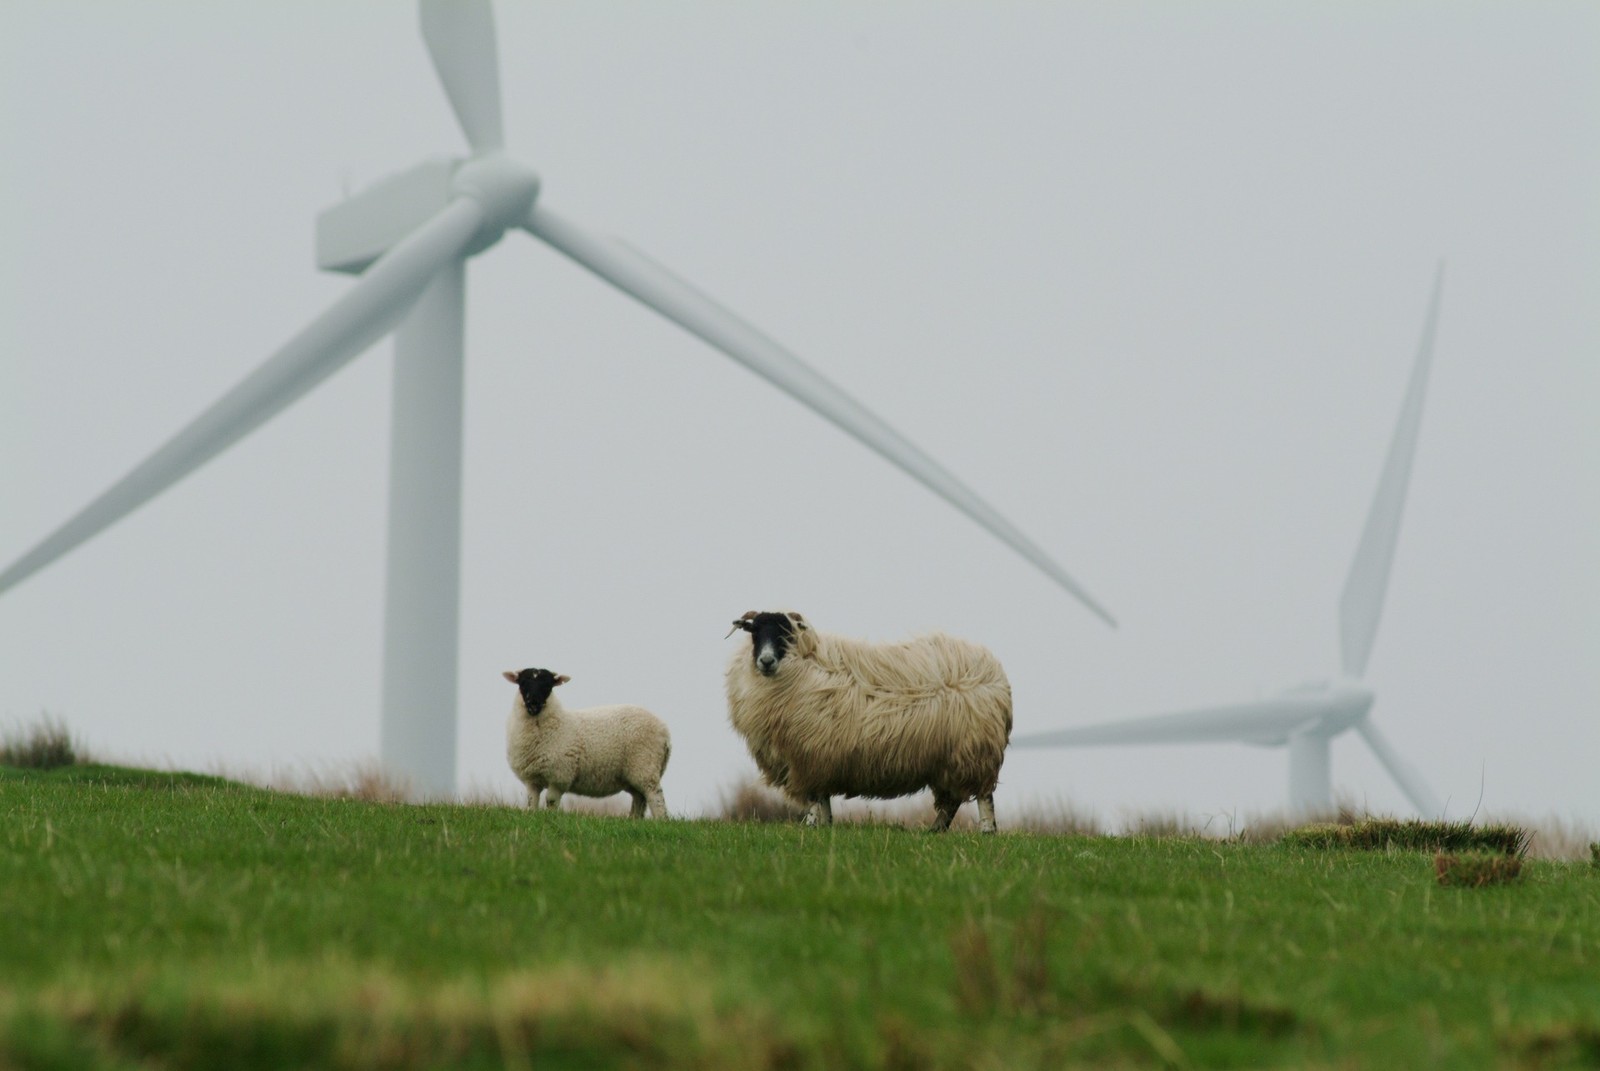 Co łączy panele słoneczne, turbiny wiatrowe, owce i pszczoły? Brytyjczycy wpadli na nietypowy pomysł